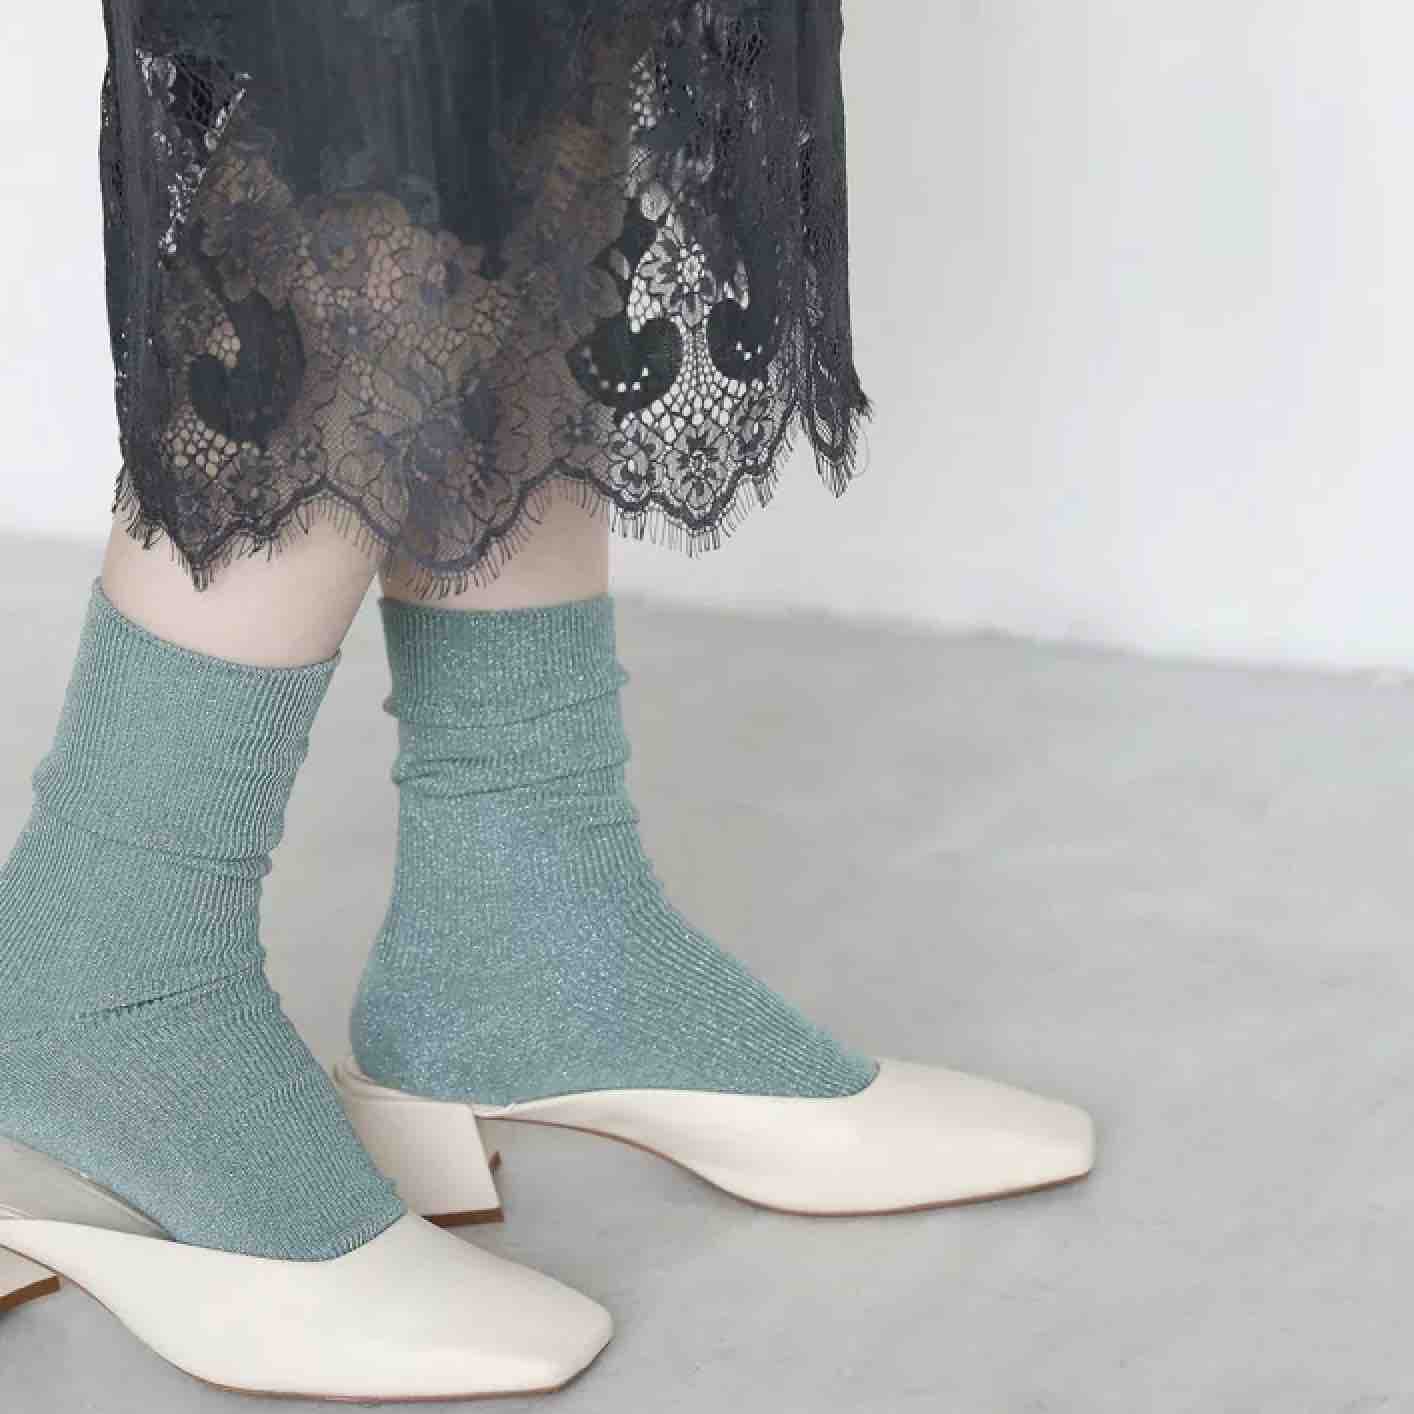 日本 Tabio 靴下屋 金葱质地 水蓝 22.5-24.5cm  2种颜色可选